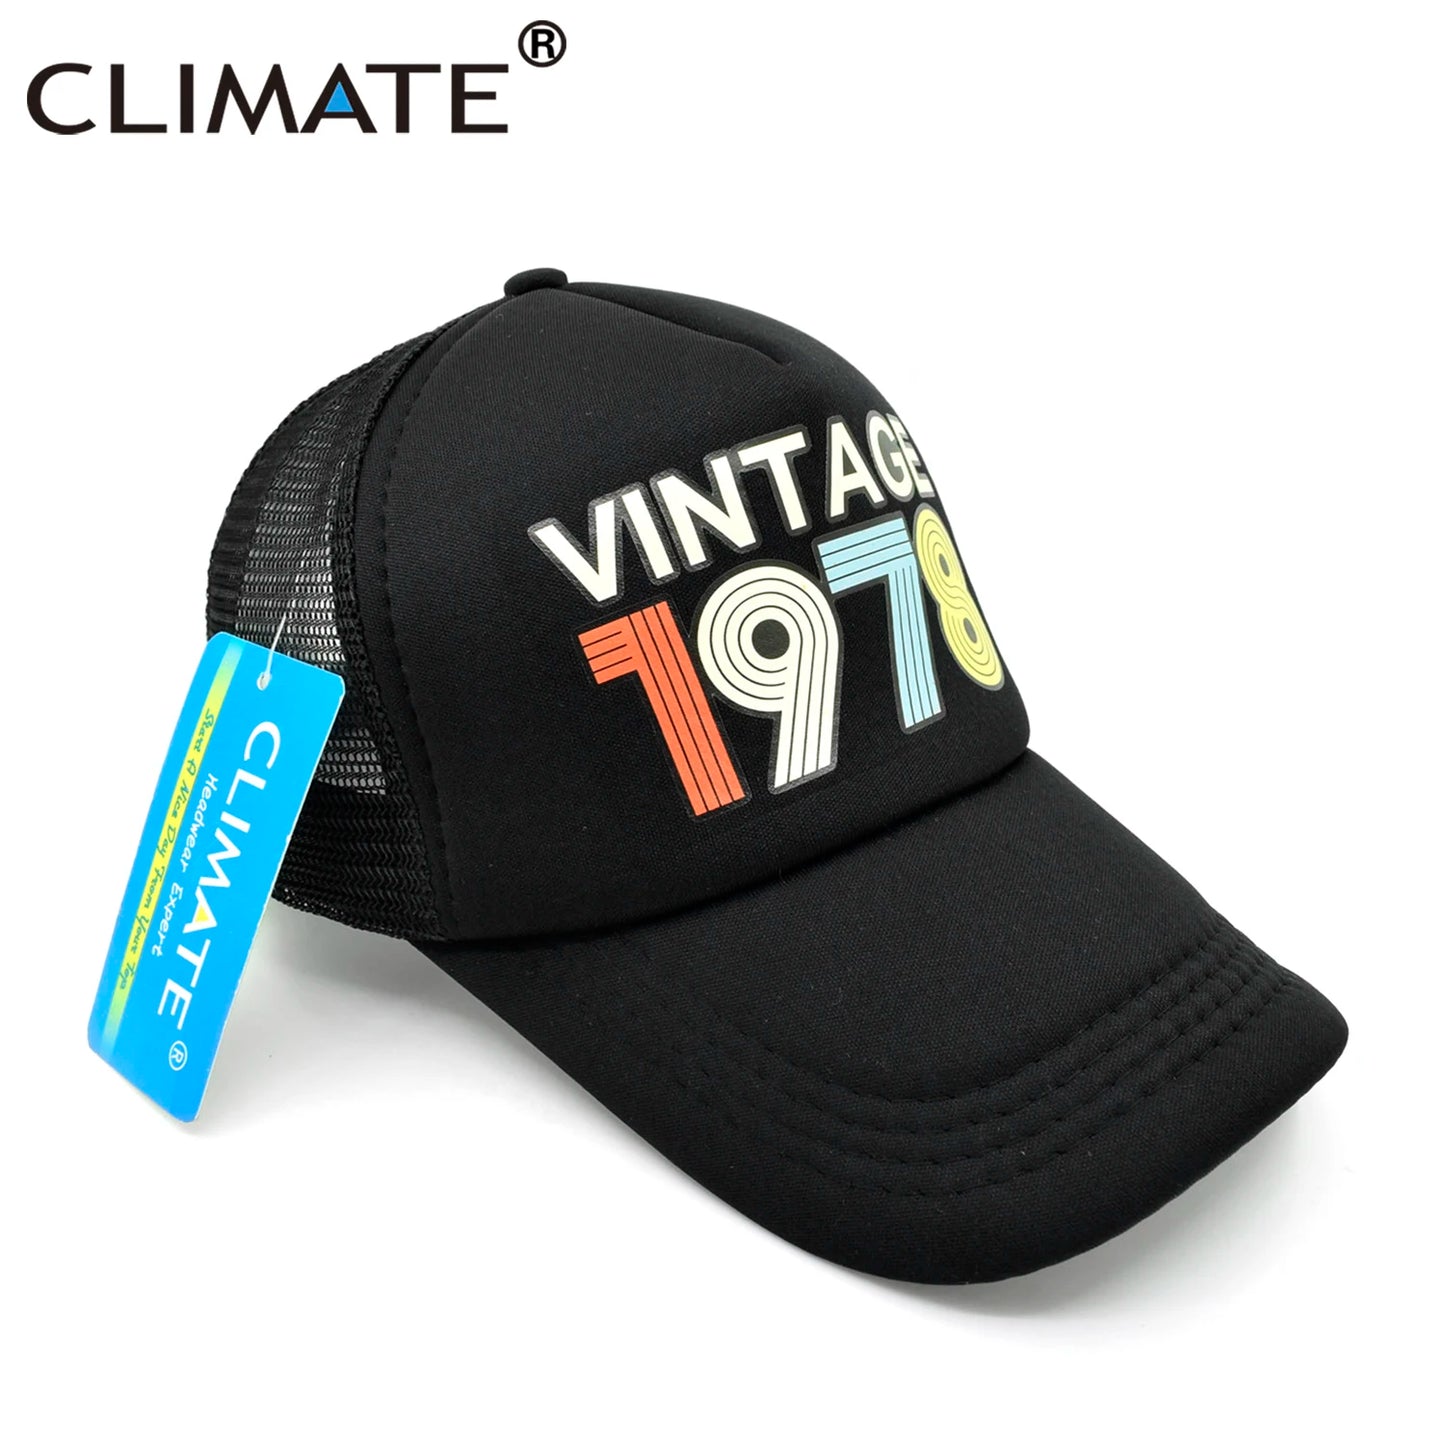 CLIMATE Vintage 1978 Cap 1978 Vintage caps Hat-Ryan fashion product